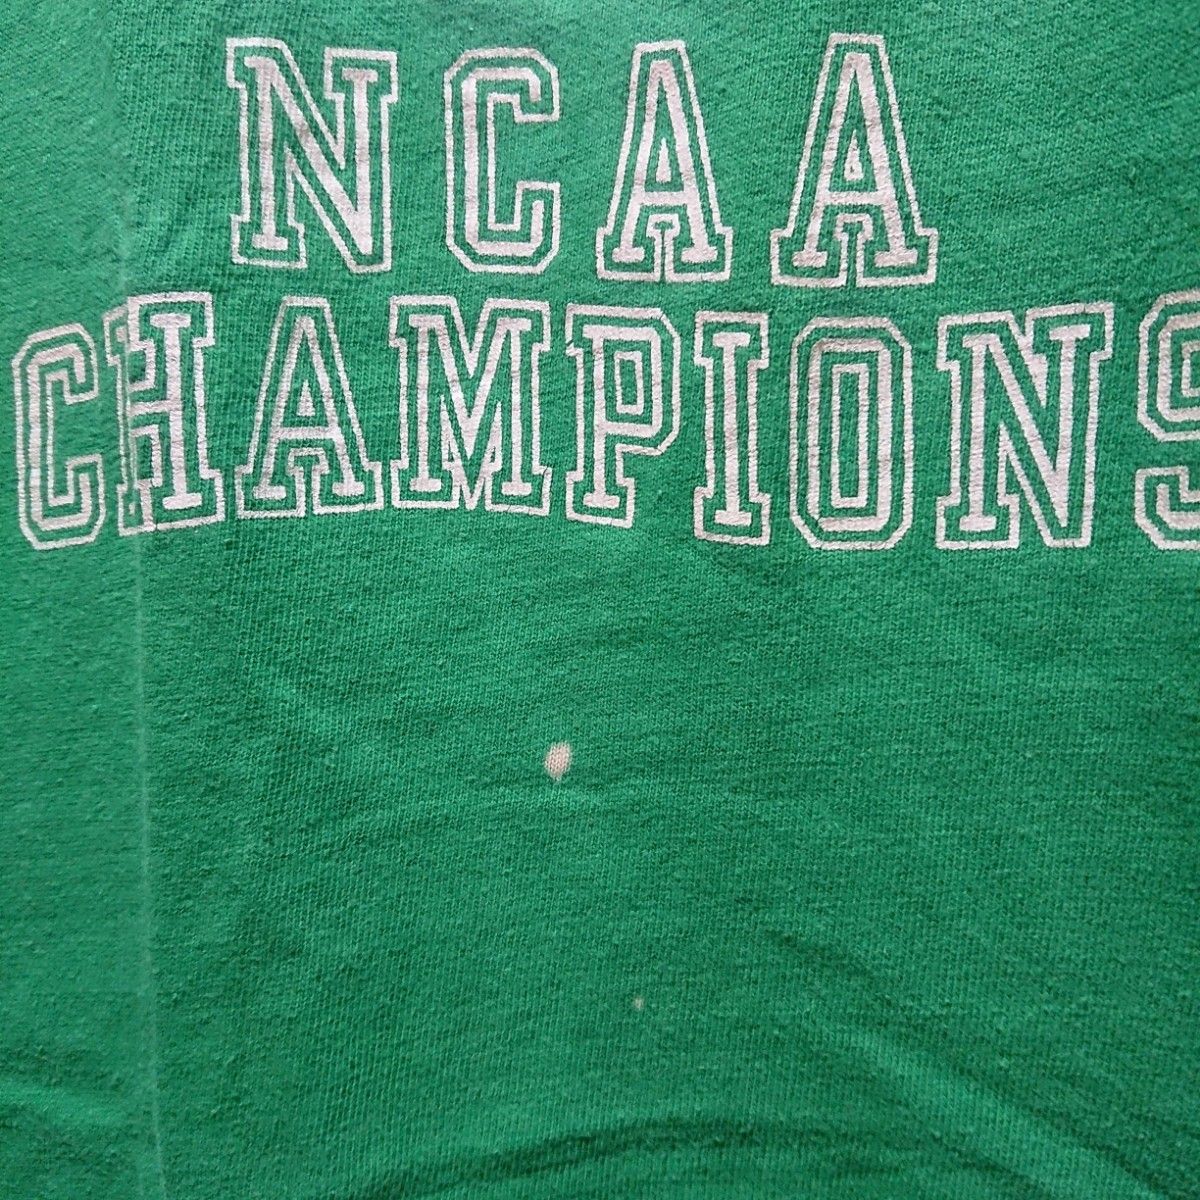 チャンピオン Tシャツ 激レア NCAA優勝記念モデル champion   半袖Tシャツ